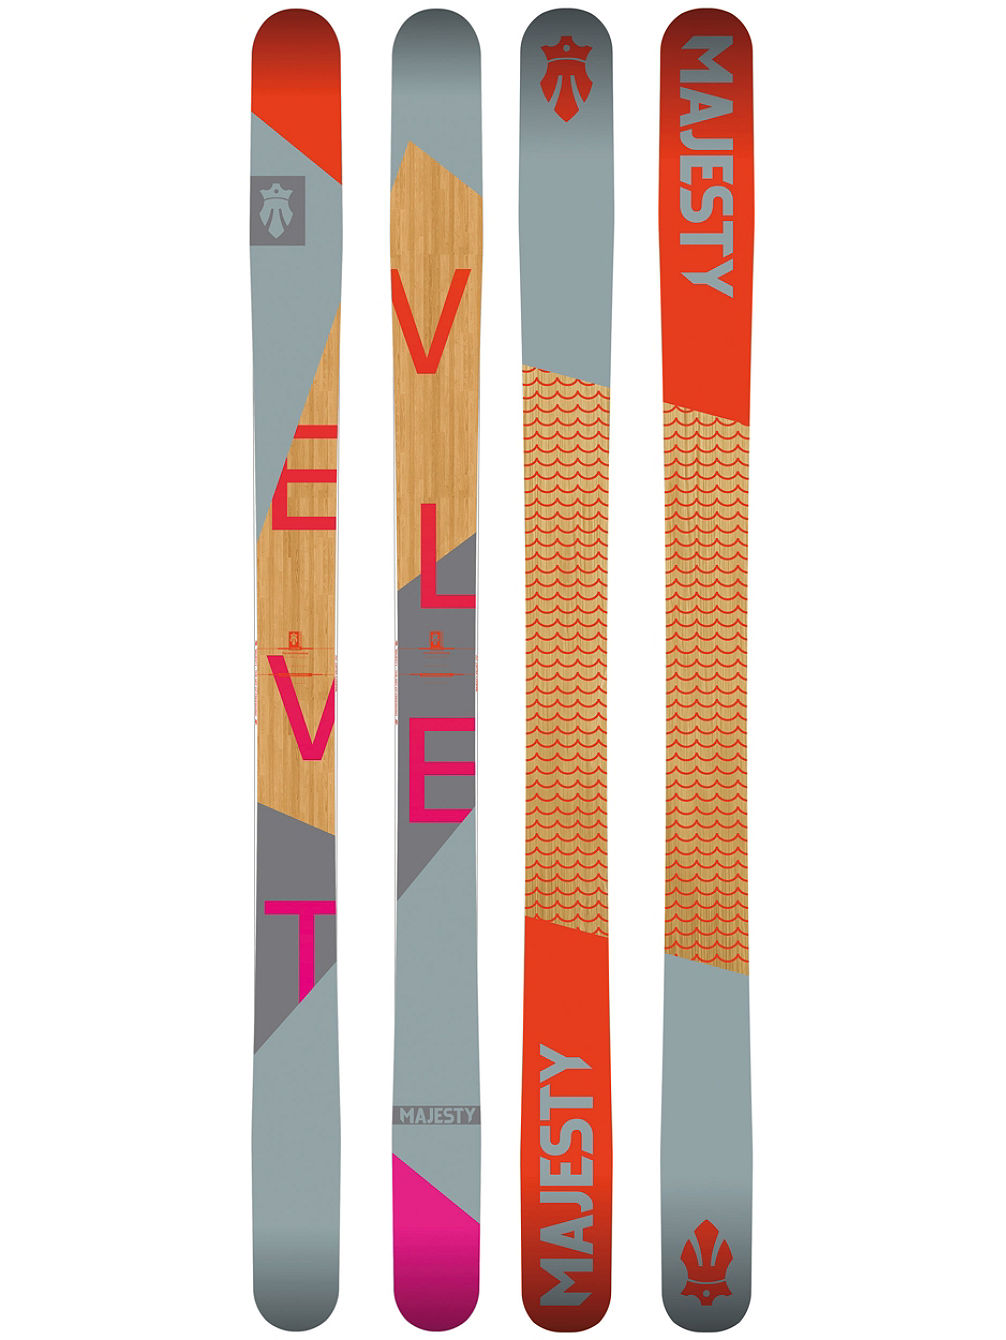 Velvet 170 Skis